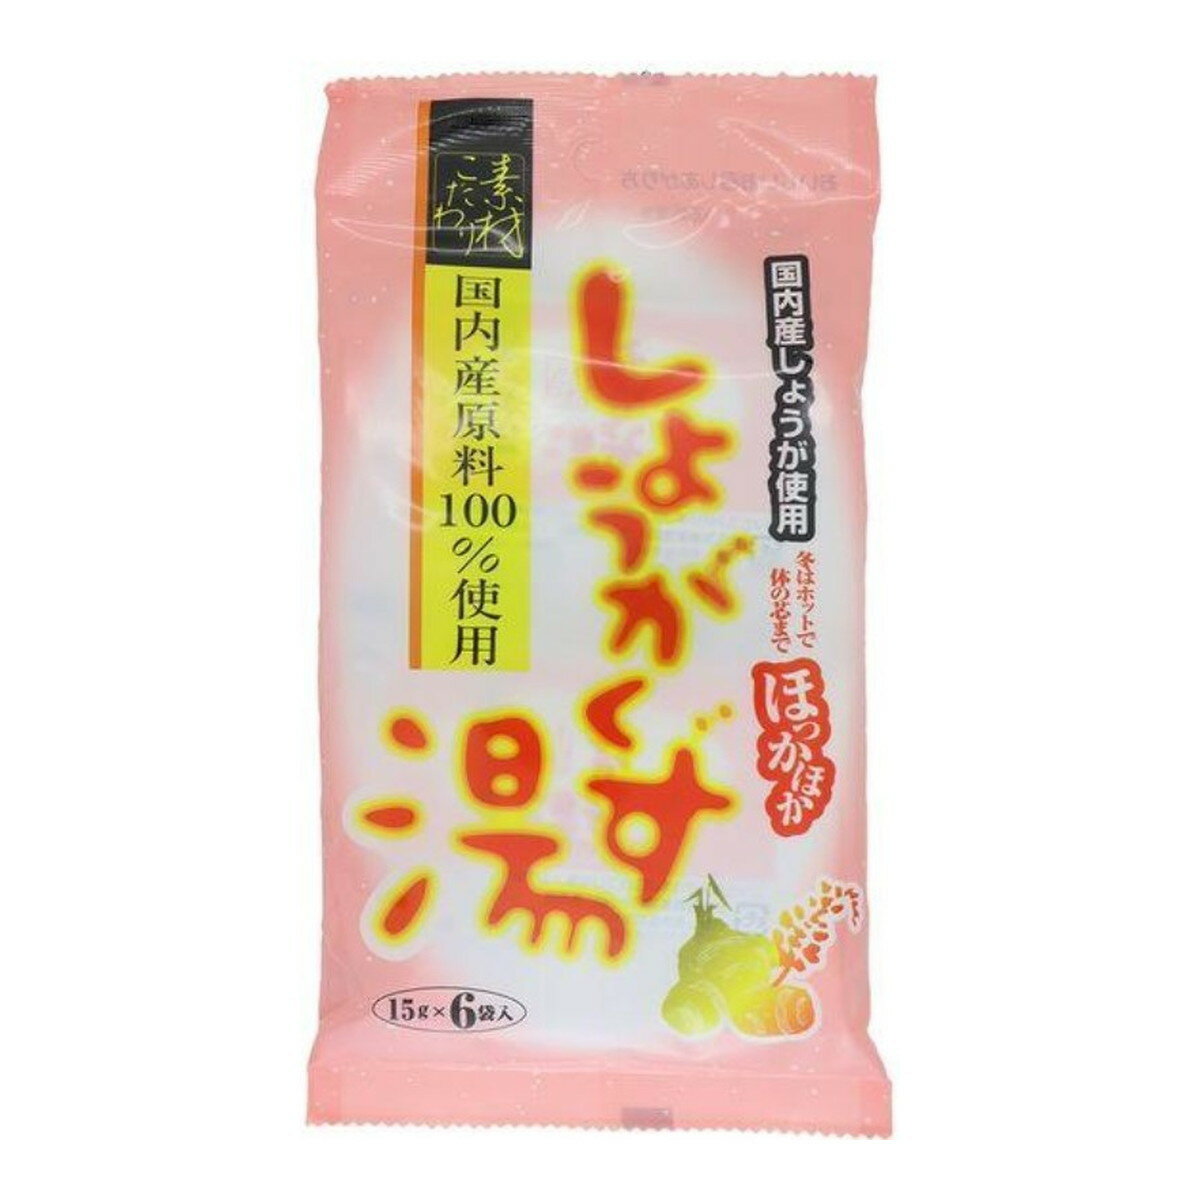 今岡製菓 しょうがくず湯 90g(15g×6袋)